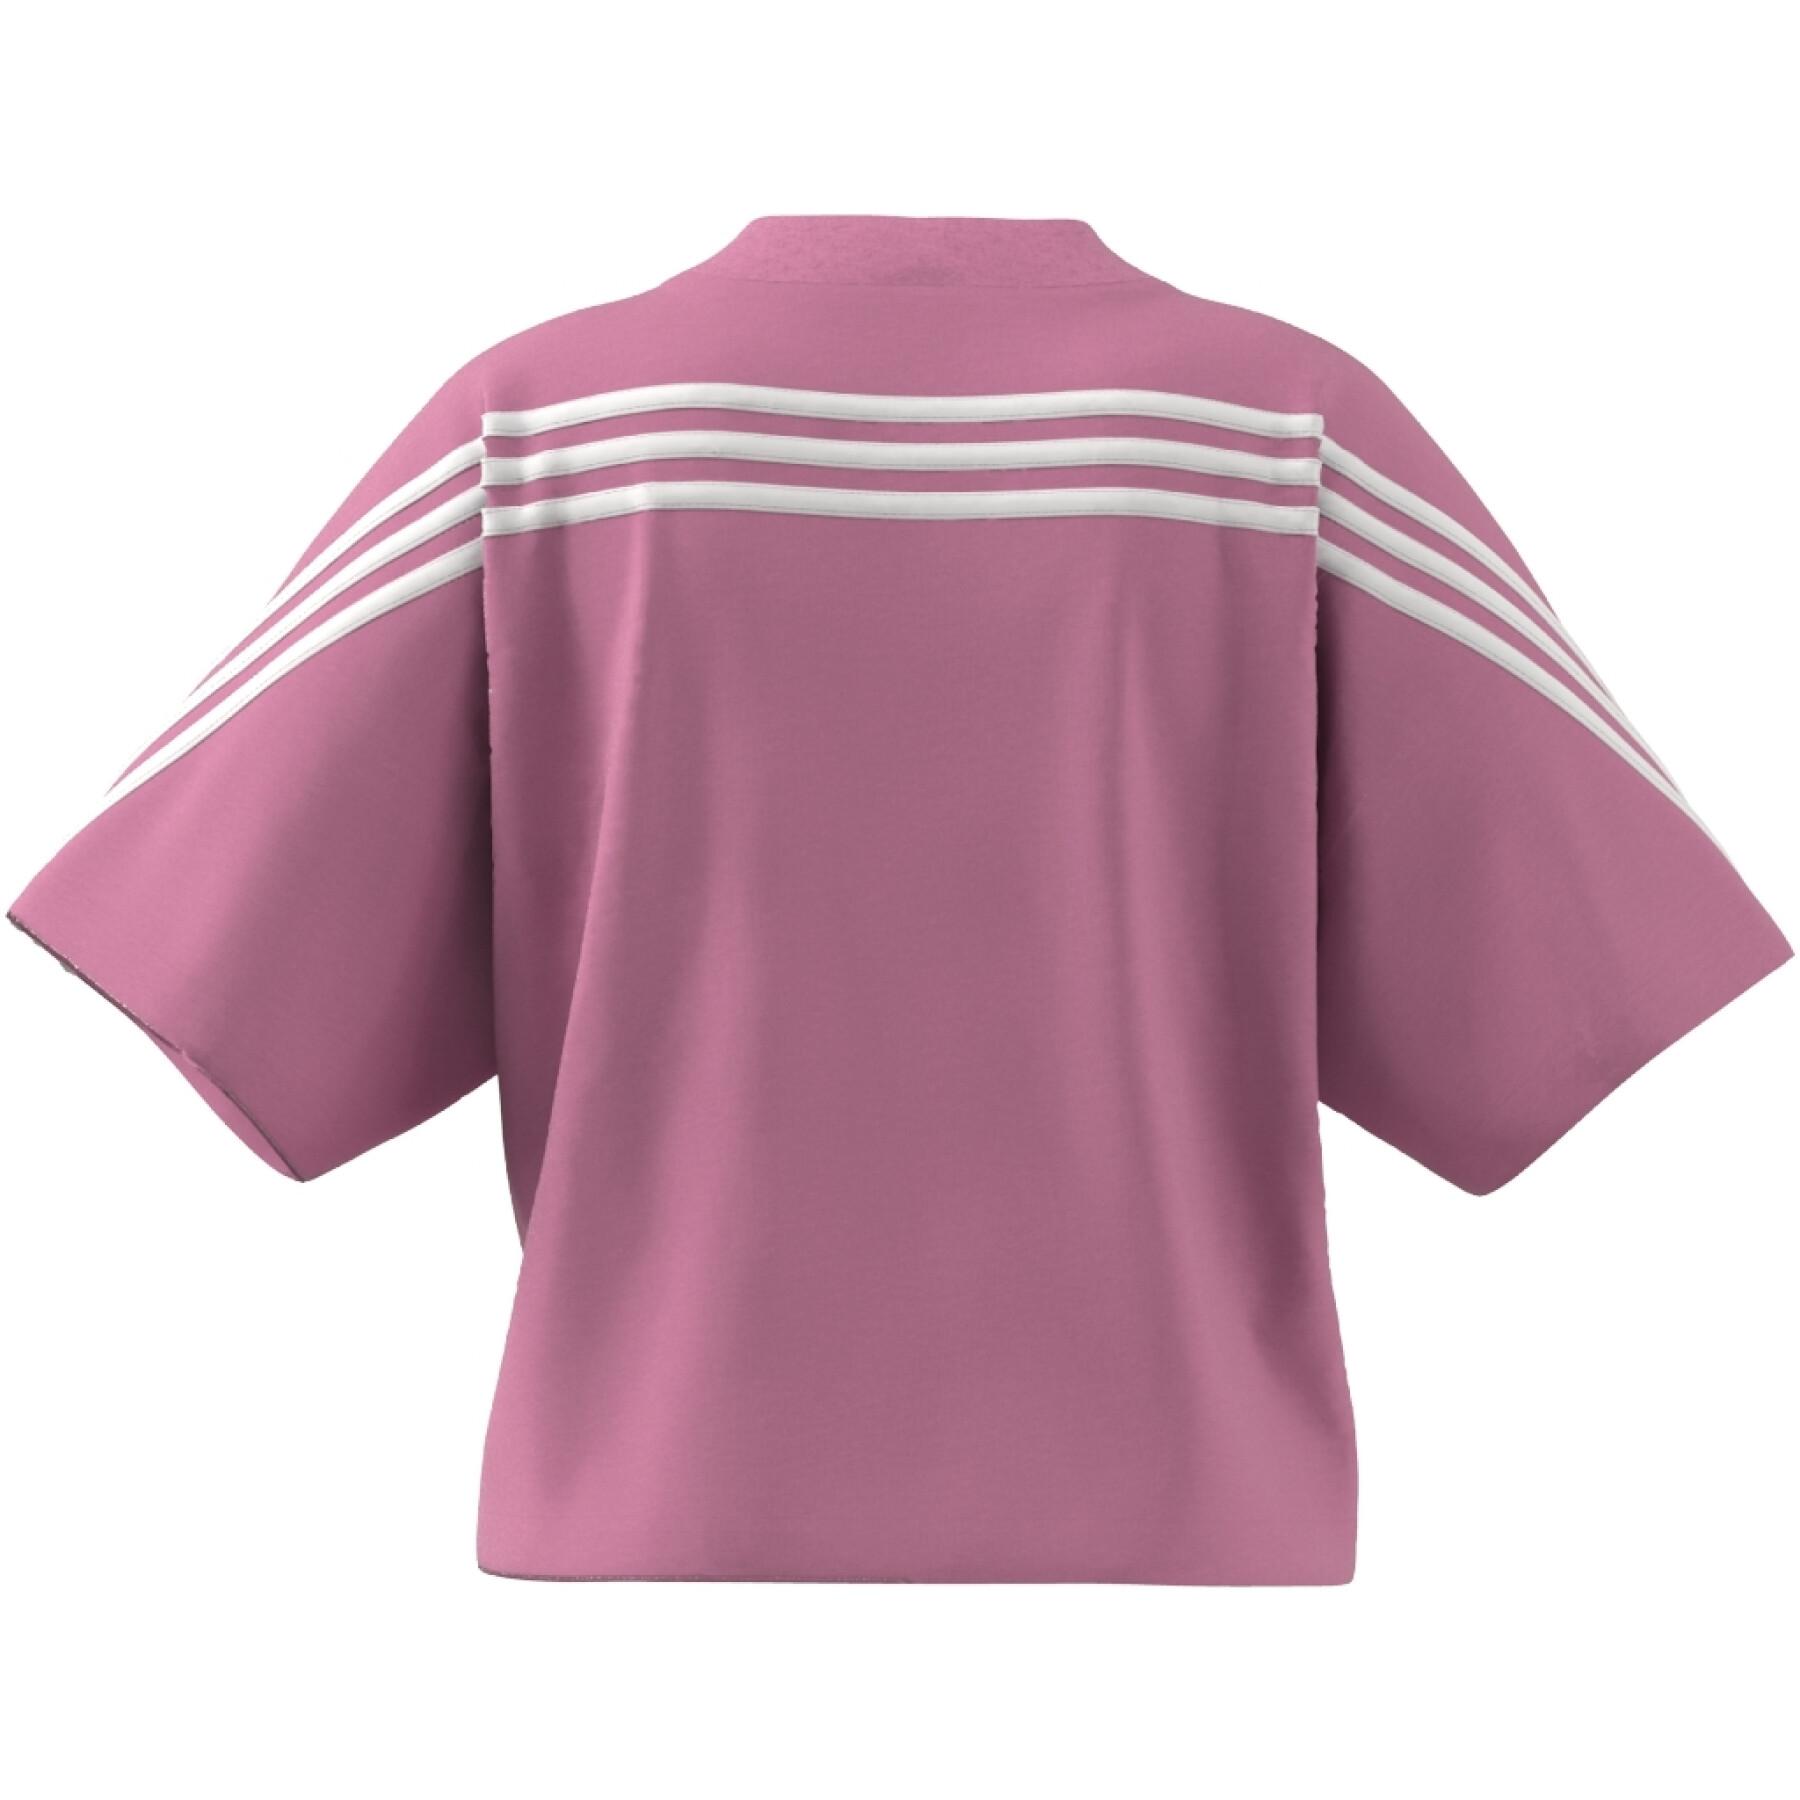 T-Shirt Frau adidas Future Icons 3-Stripes